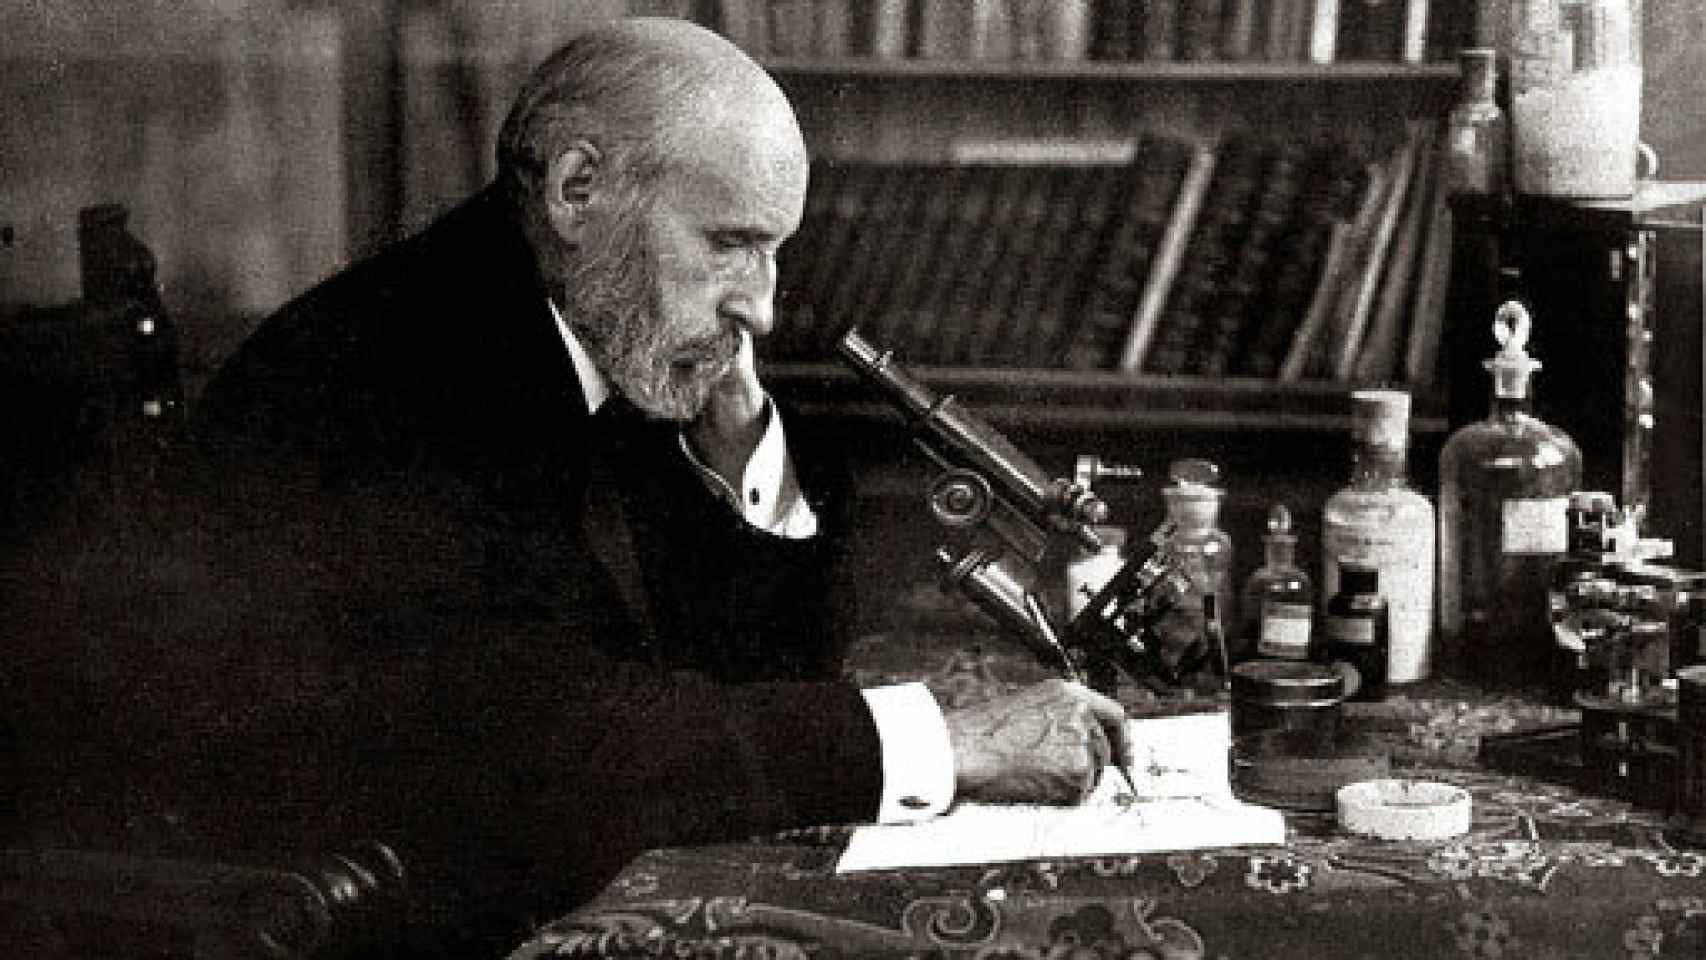 Image: Epistolario de Ramón y Cajal